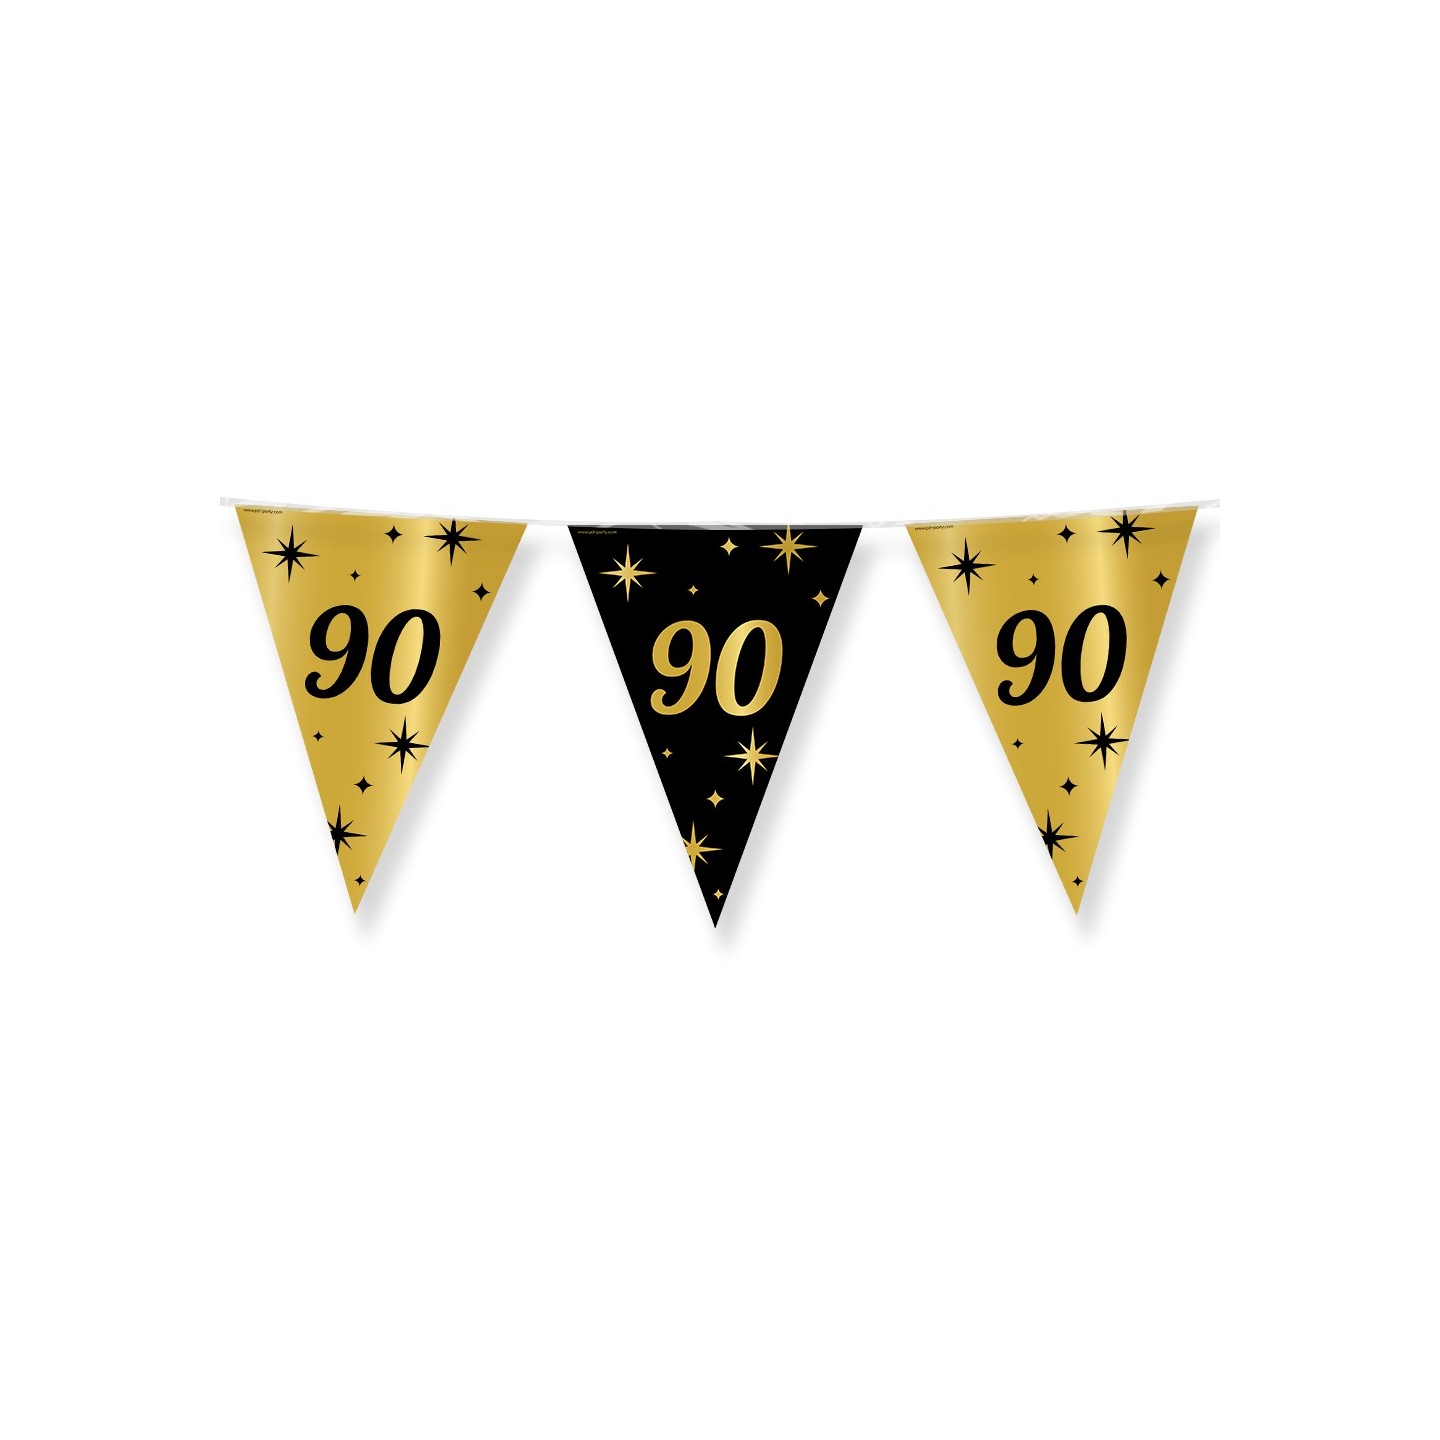 Verjaardag slinger vlaggenlijn 90 jaar decoratie versiering